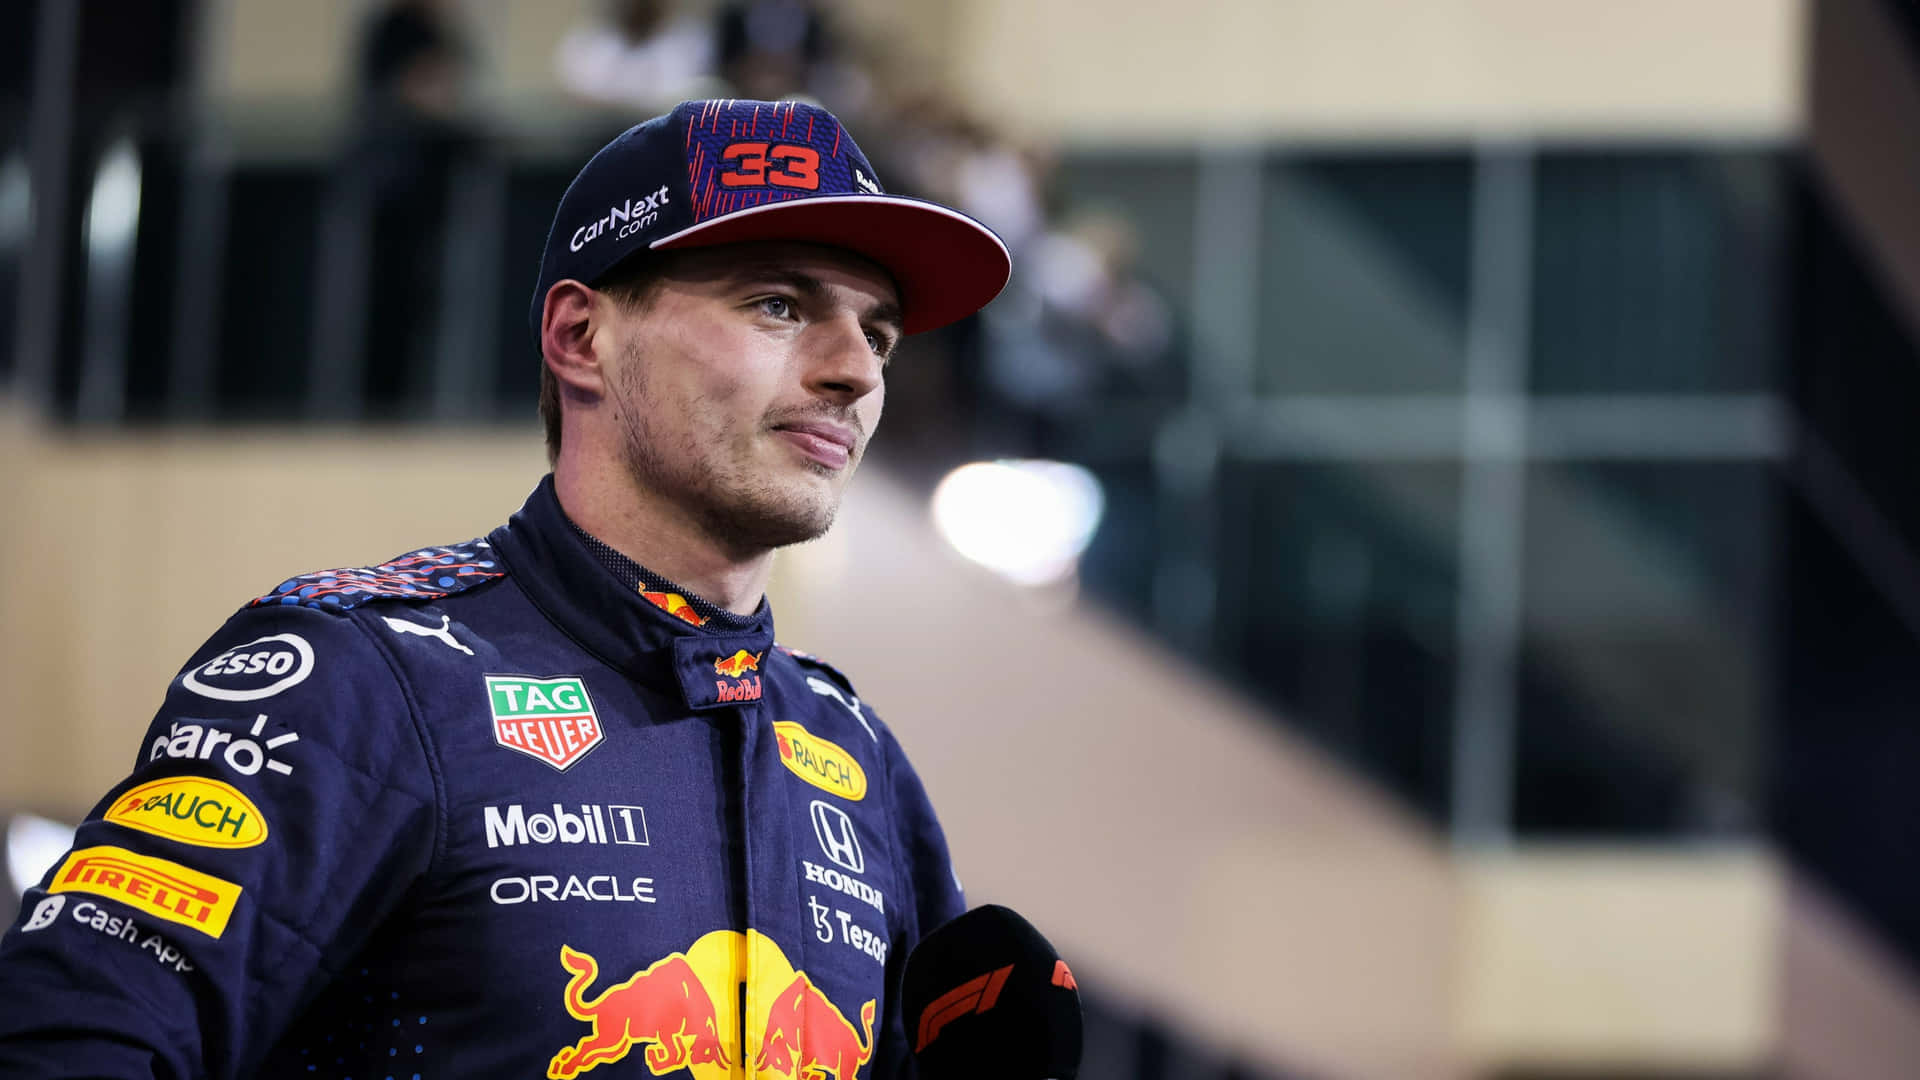 Unpilota Della Red Bull Racing È In Piedi Di Fronte A Una Folla. Sfondo